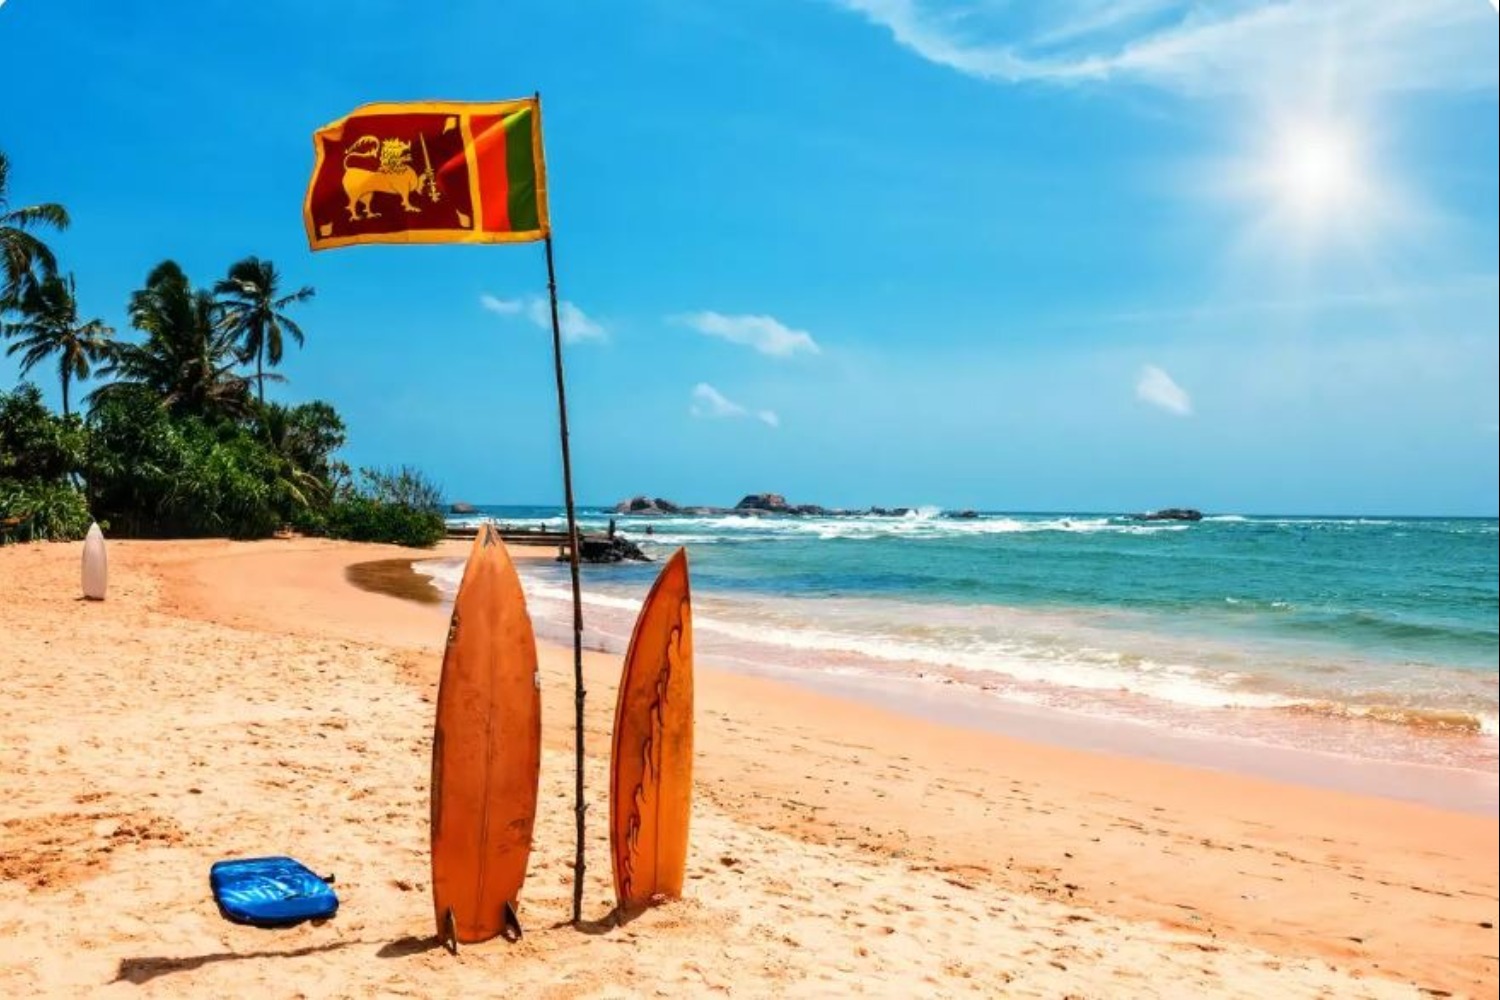 Sri Lanka Introduces E-Visa for Sea Routers